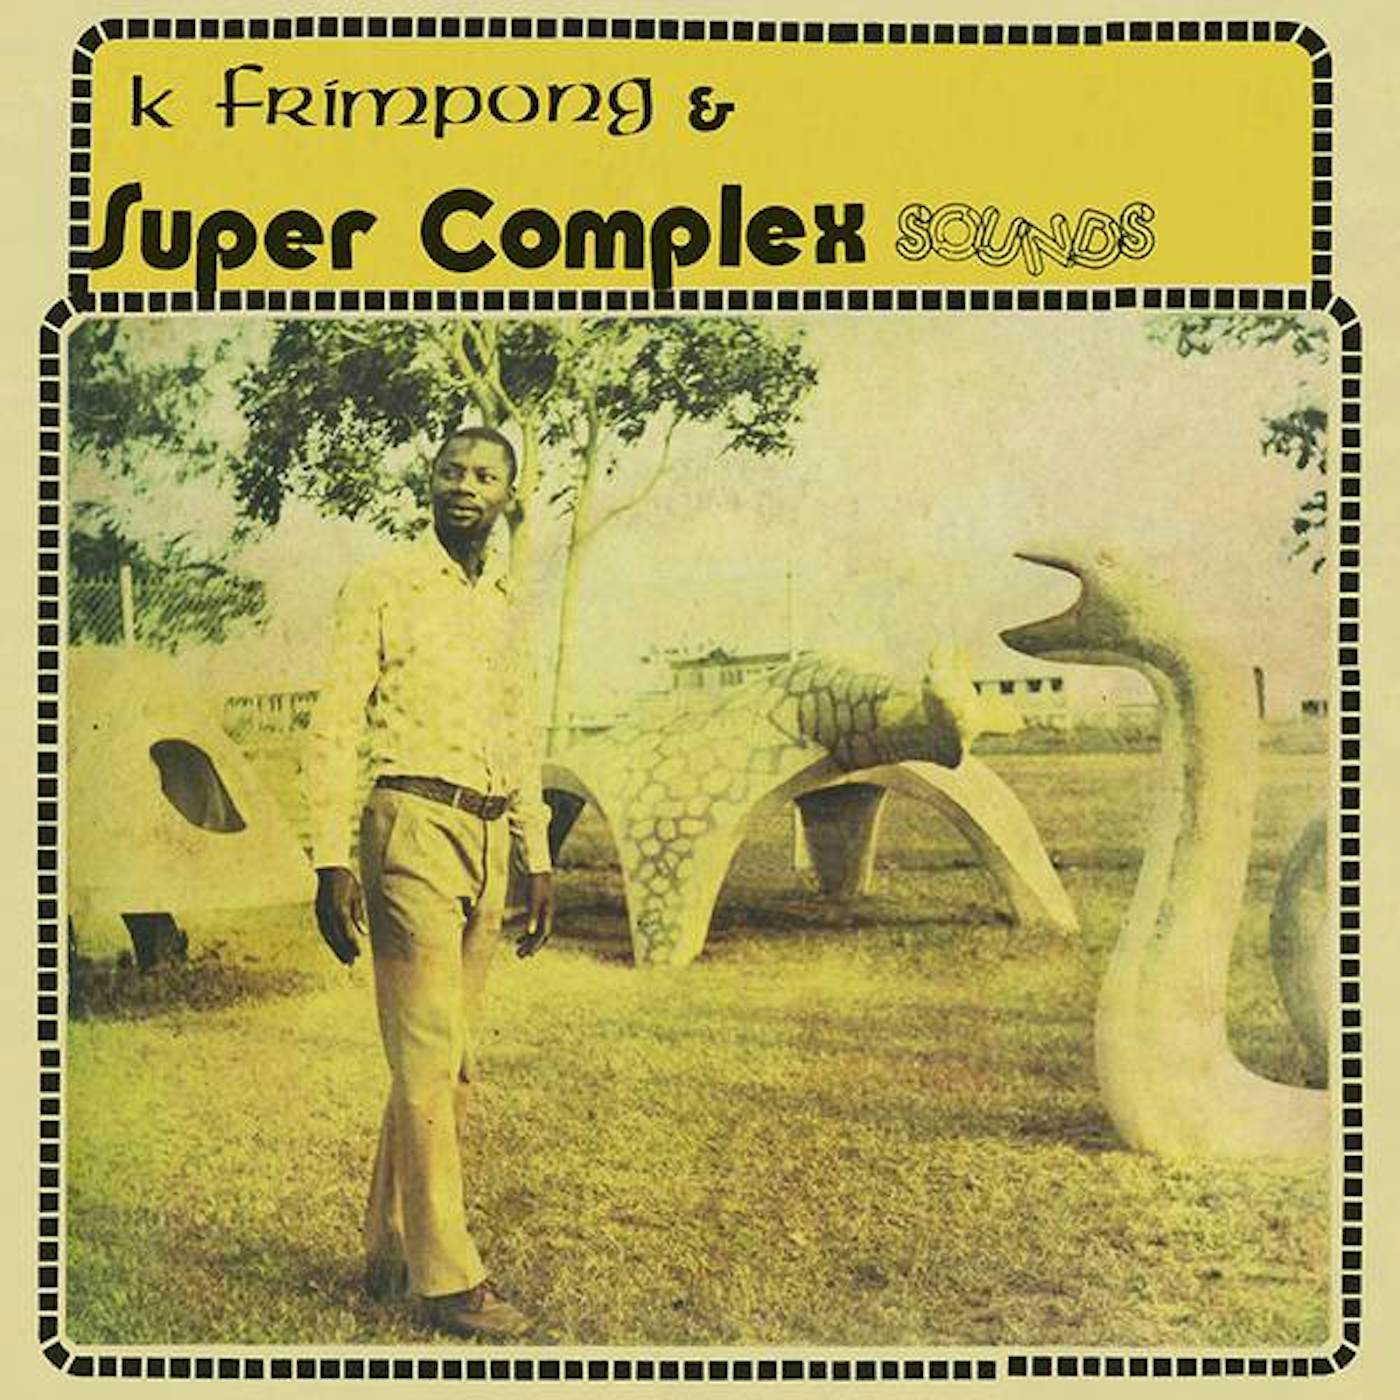 K. Frimpong & Super Complex Sounds AHYEWA SPECIAL Vinyl Record